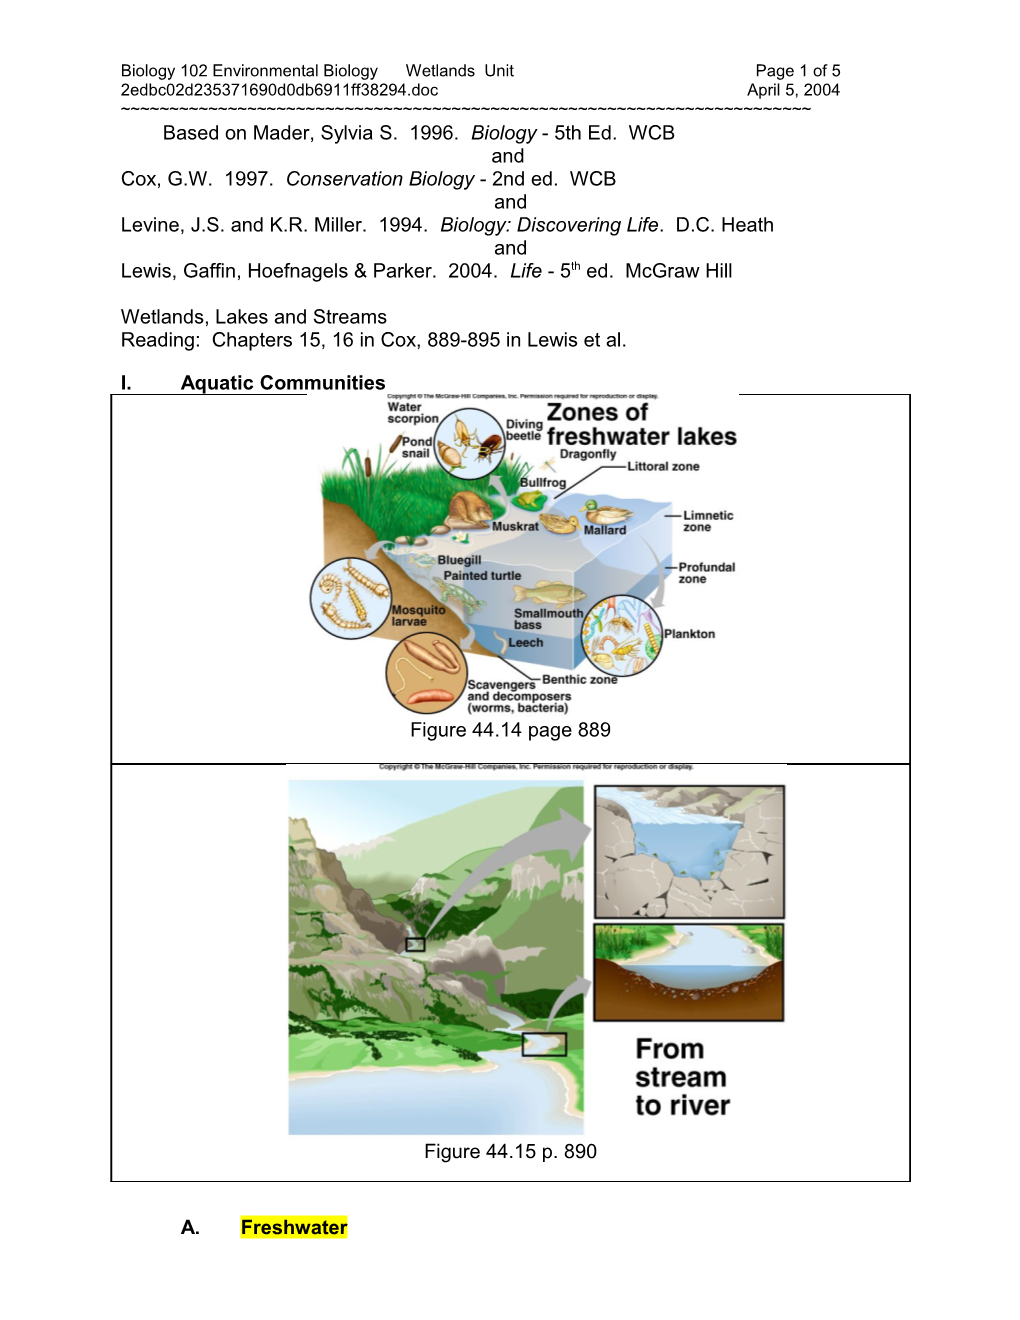 Wetlands Unit Lecture Notes